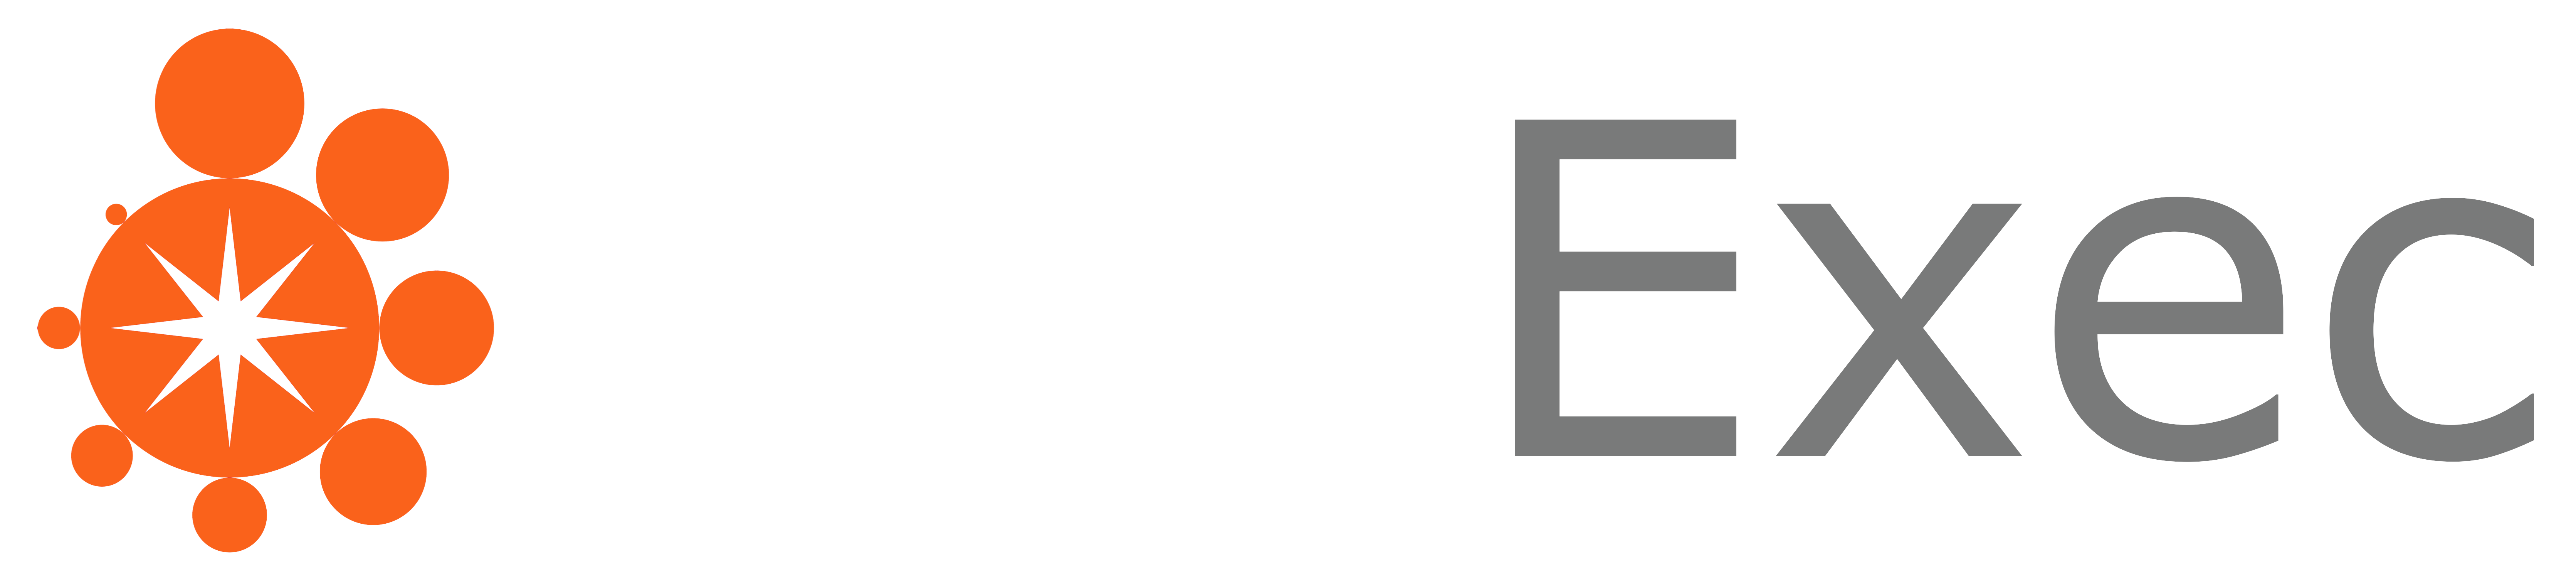 StarExec Logo